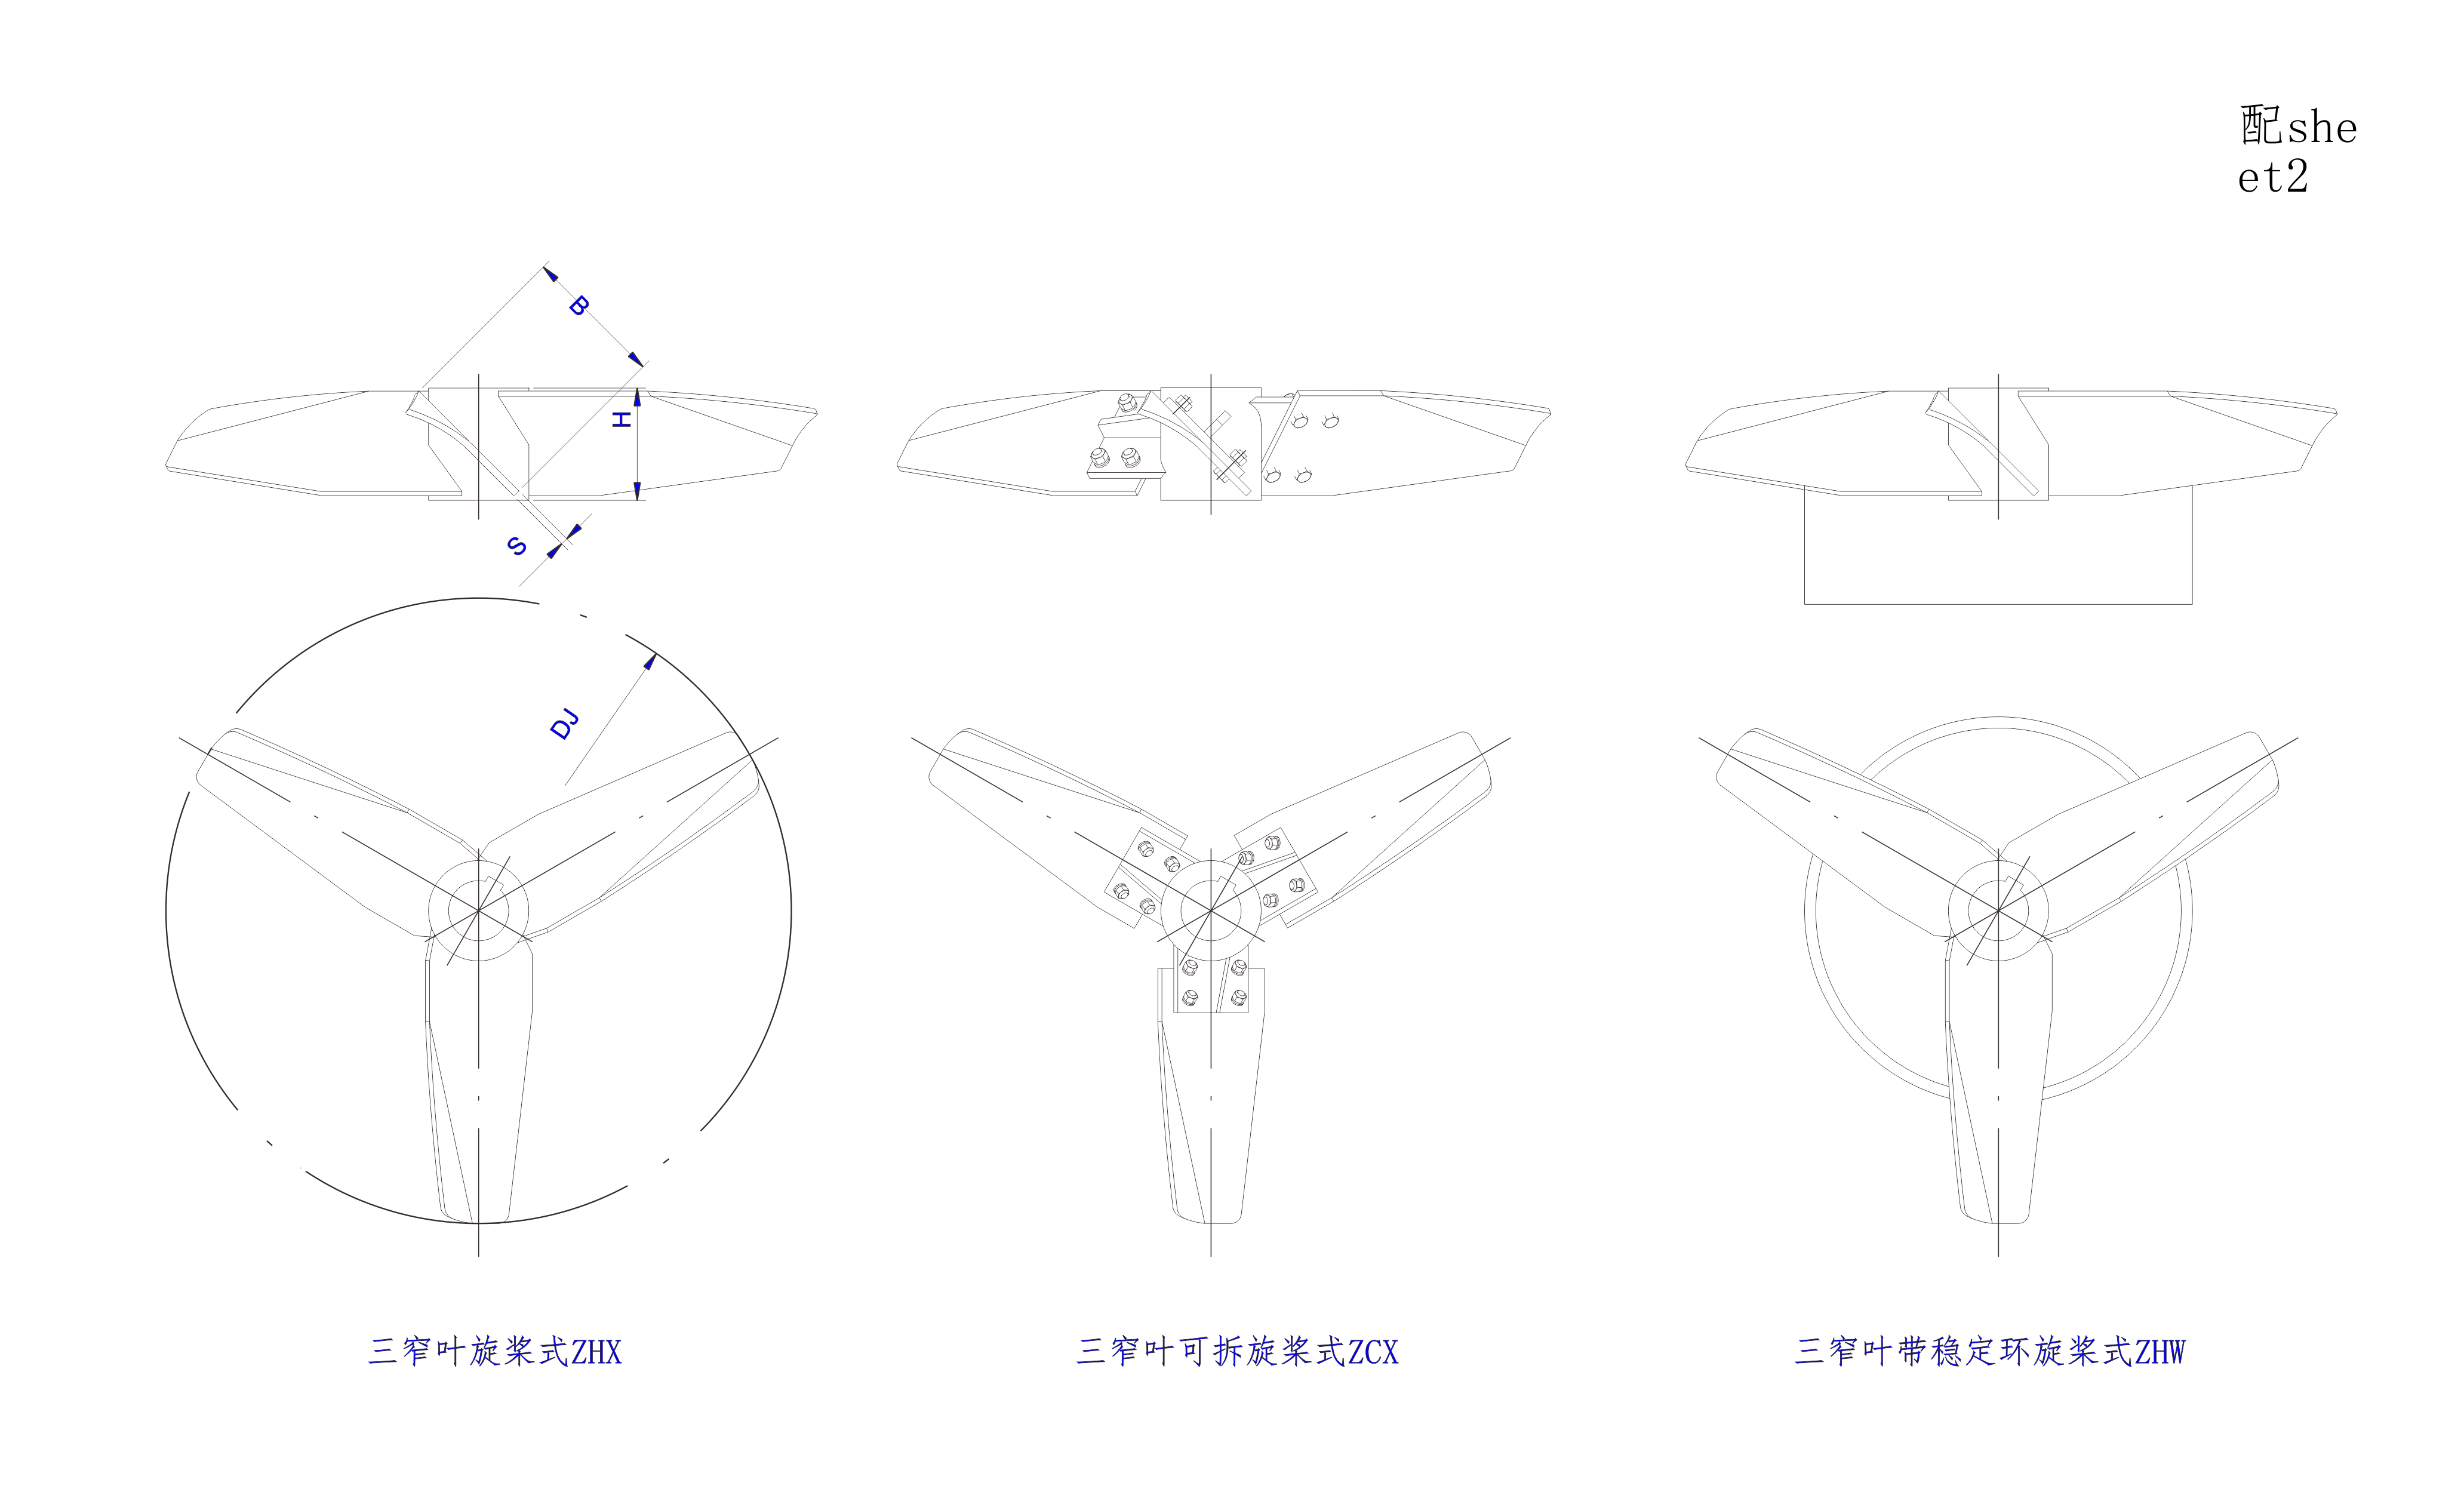   三窄叶旋桨式搅拌器设计图